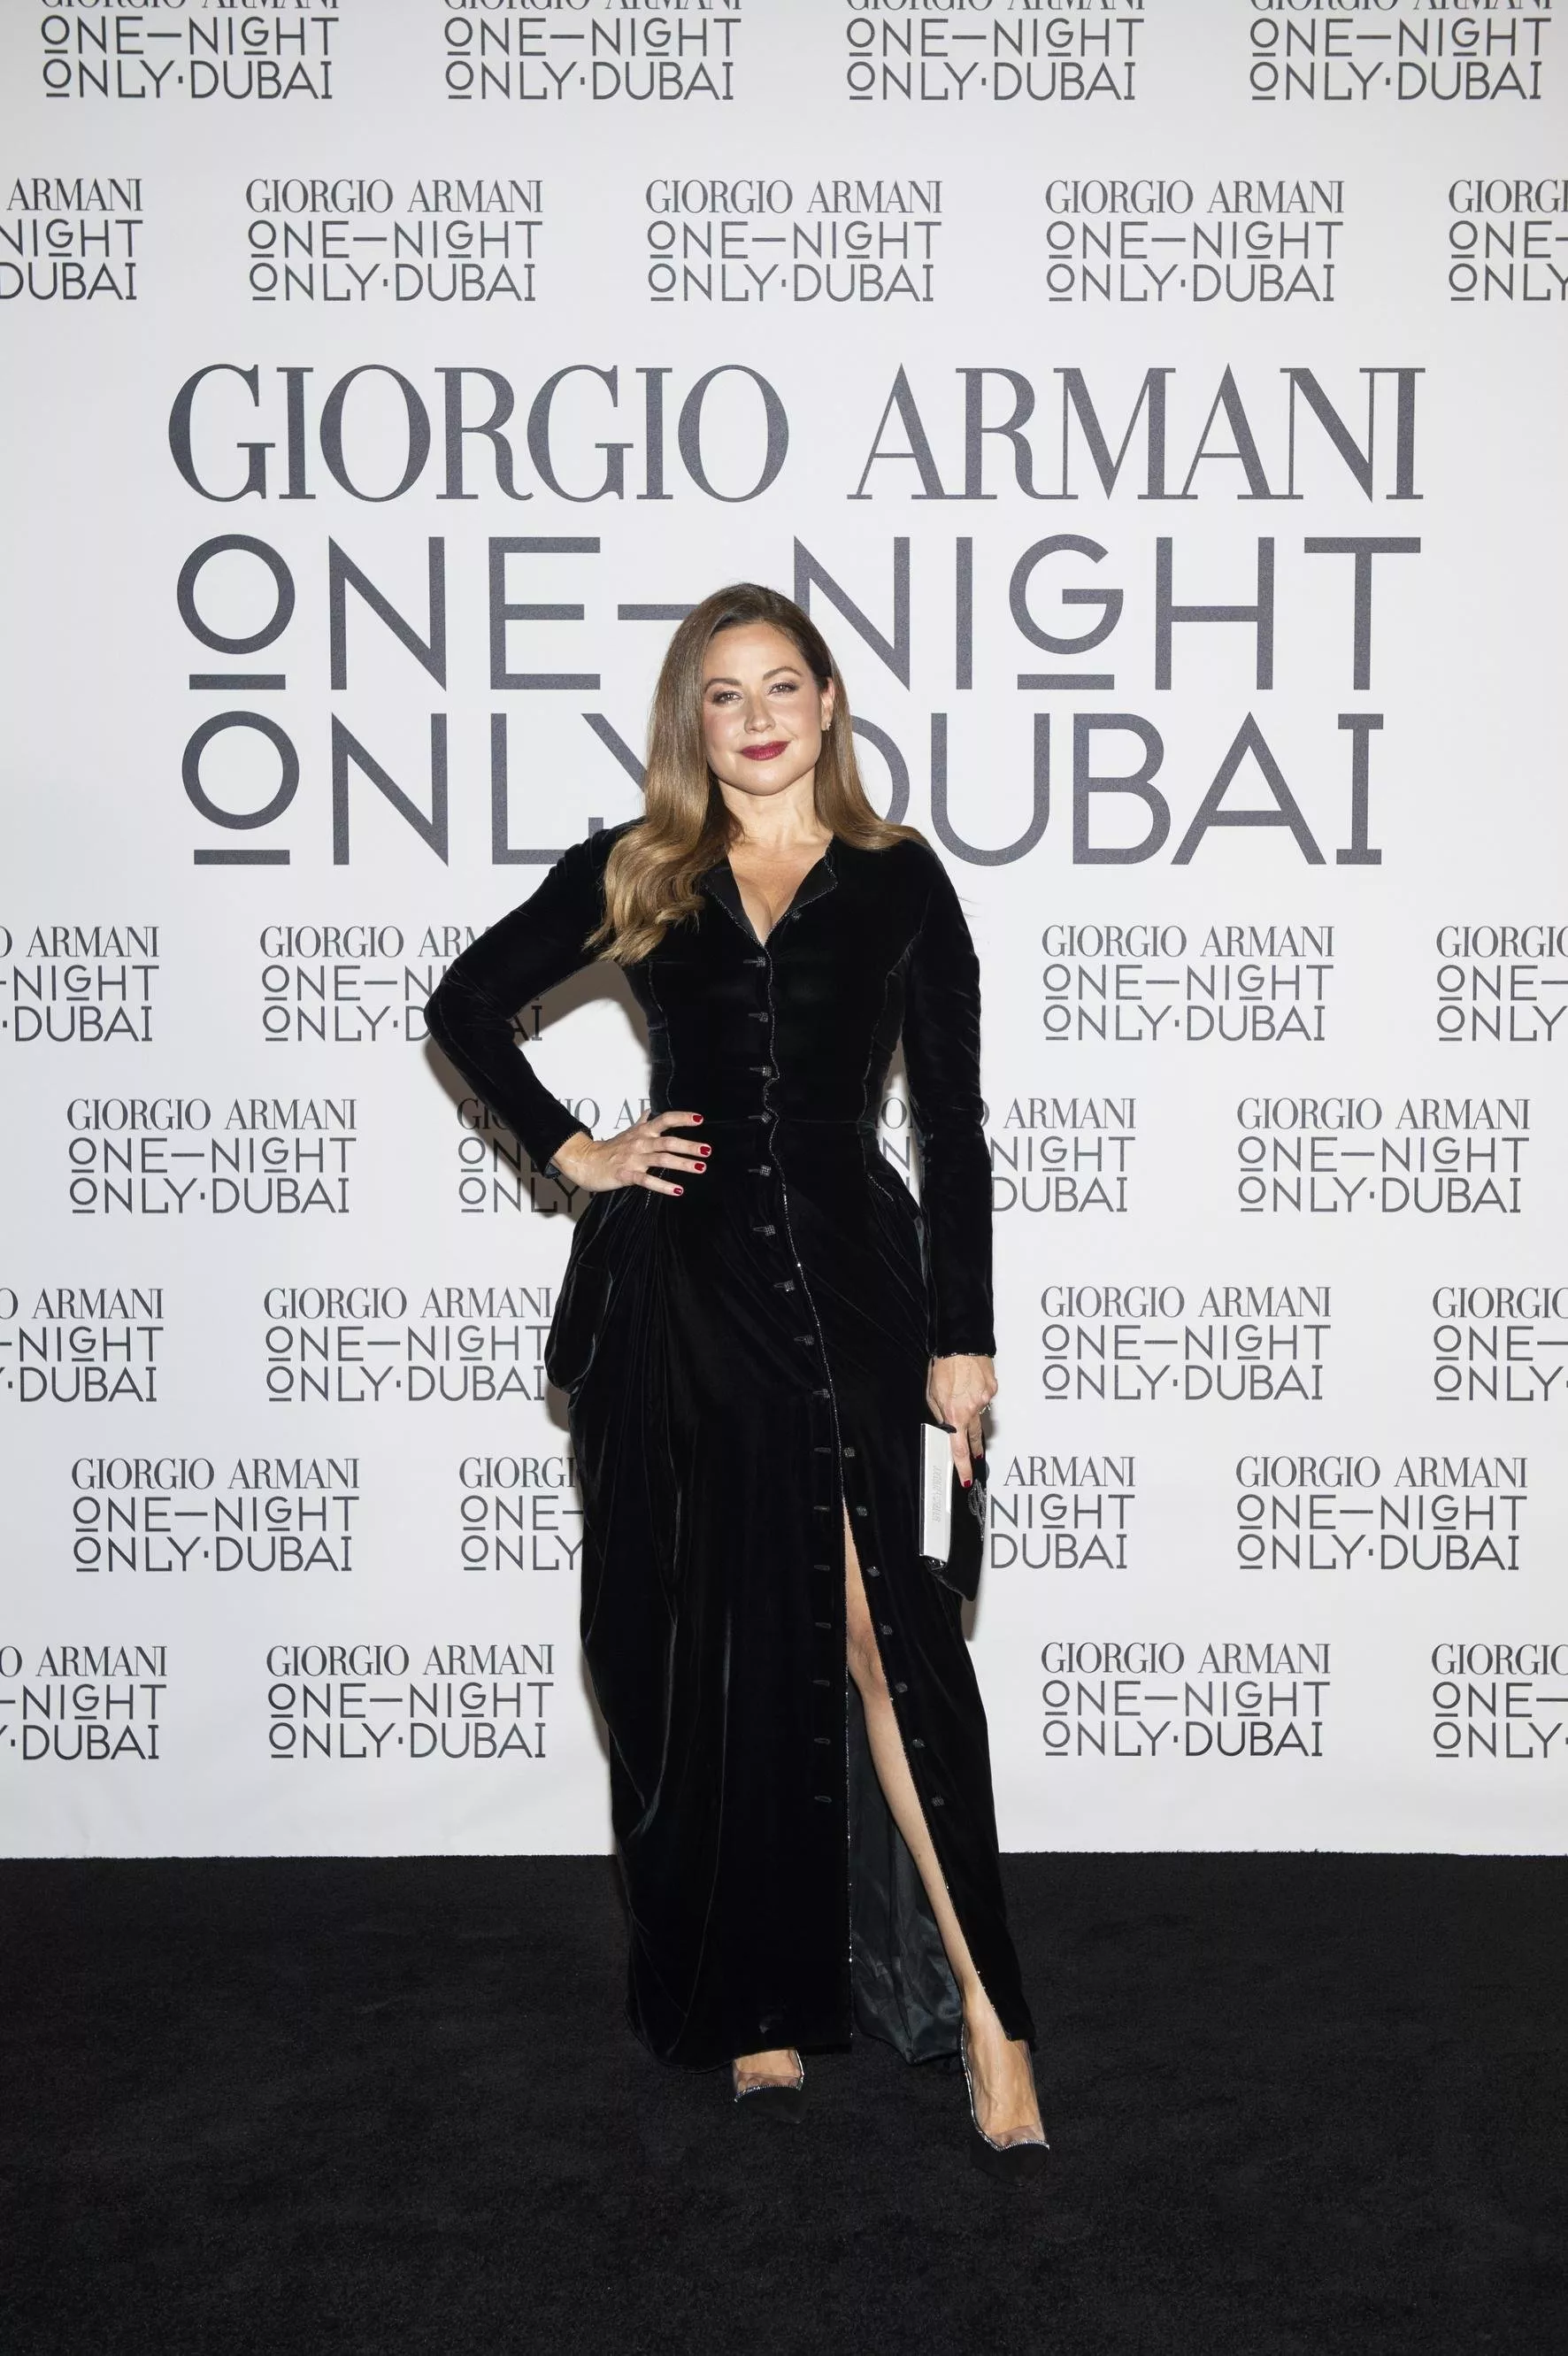 مهد للفخامة... Giorgio Armani يسلّط الضوء على الشرق الأوسط في حدث One Night Only Dubai